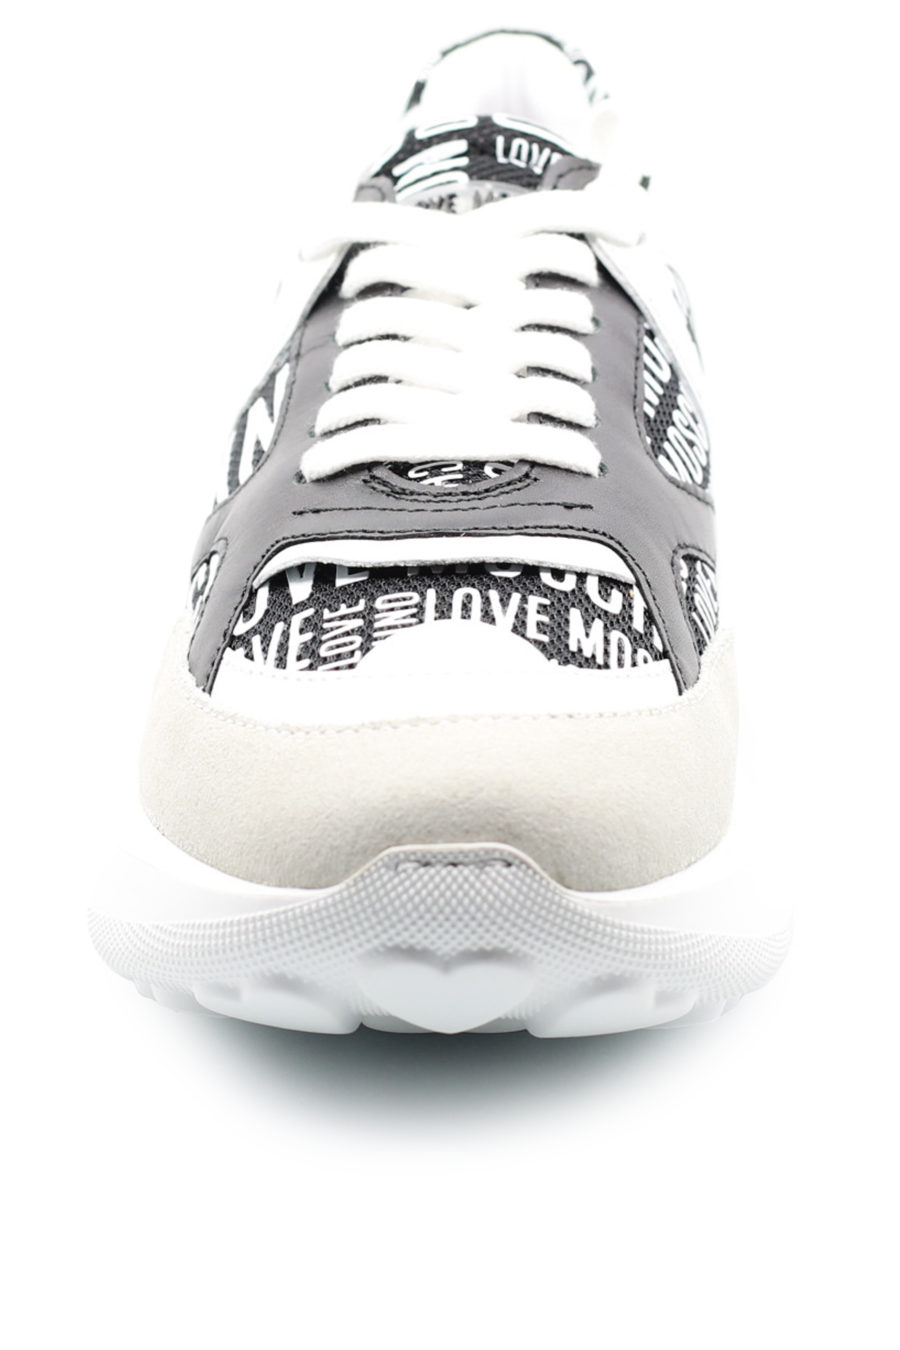 Zapatillas blancas con logotipo estampado "all over" - 39f67f0f6c14dfc94e0adbe0c109738256225d56